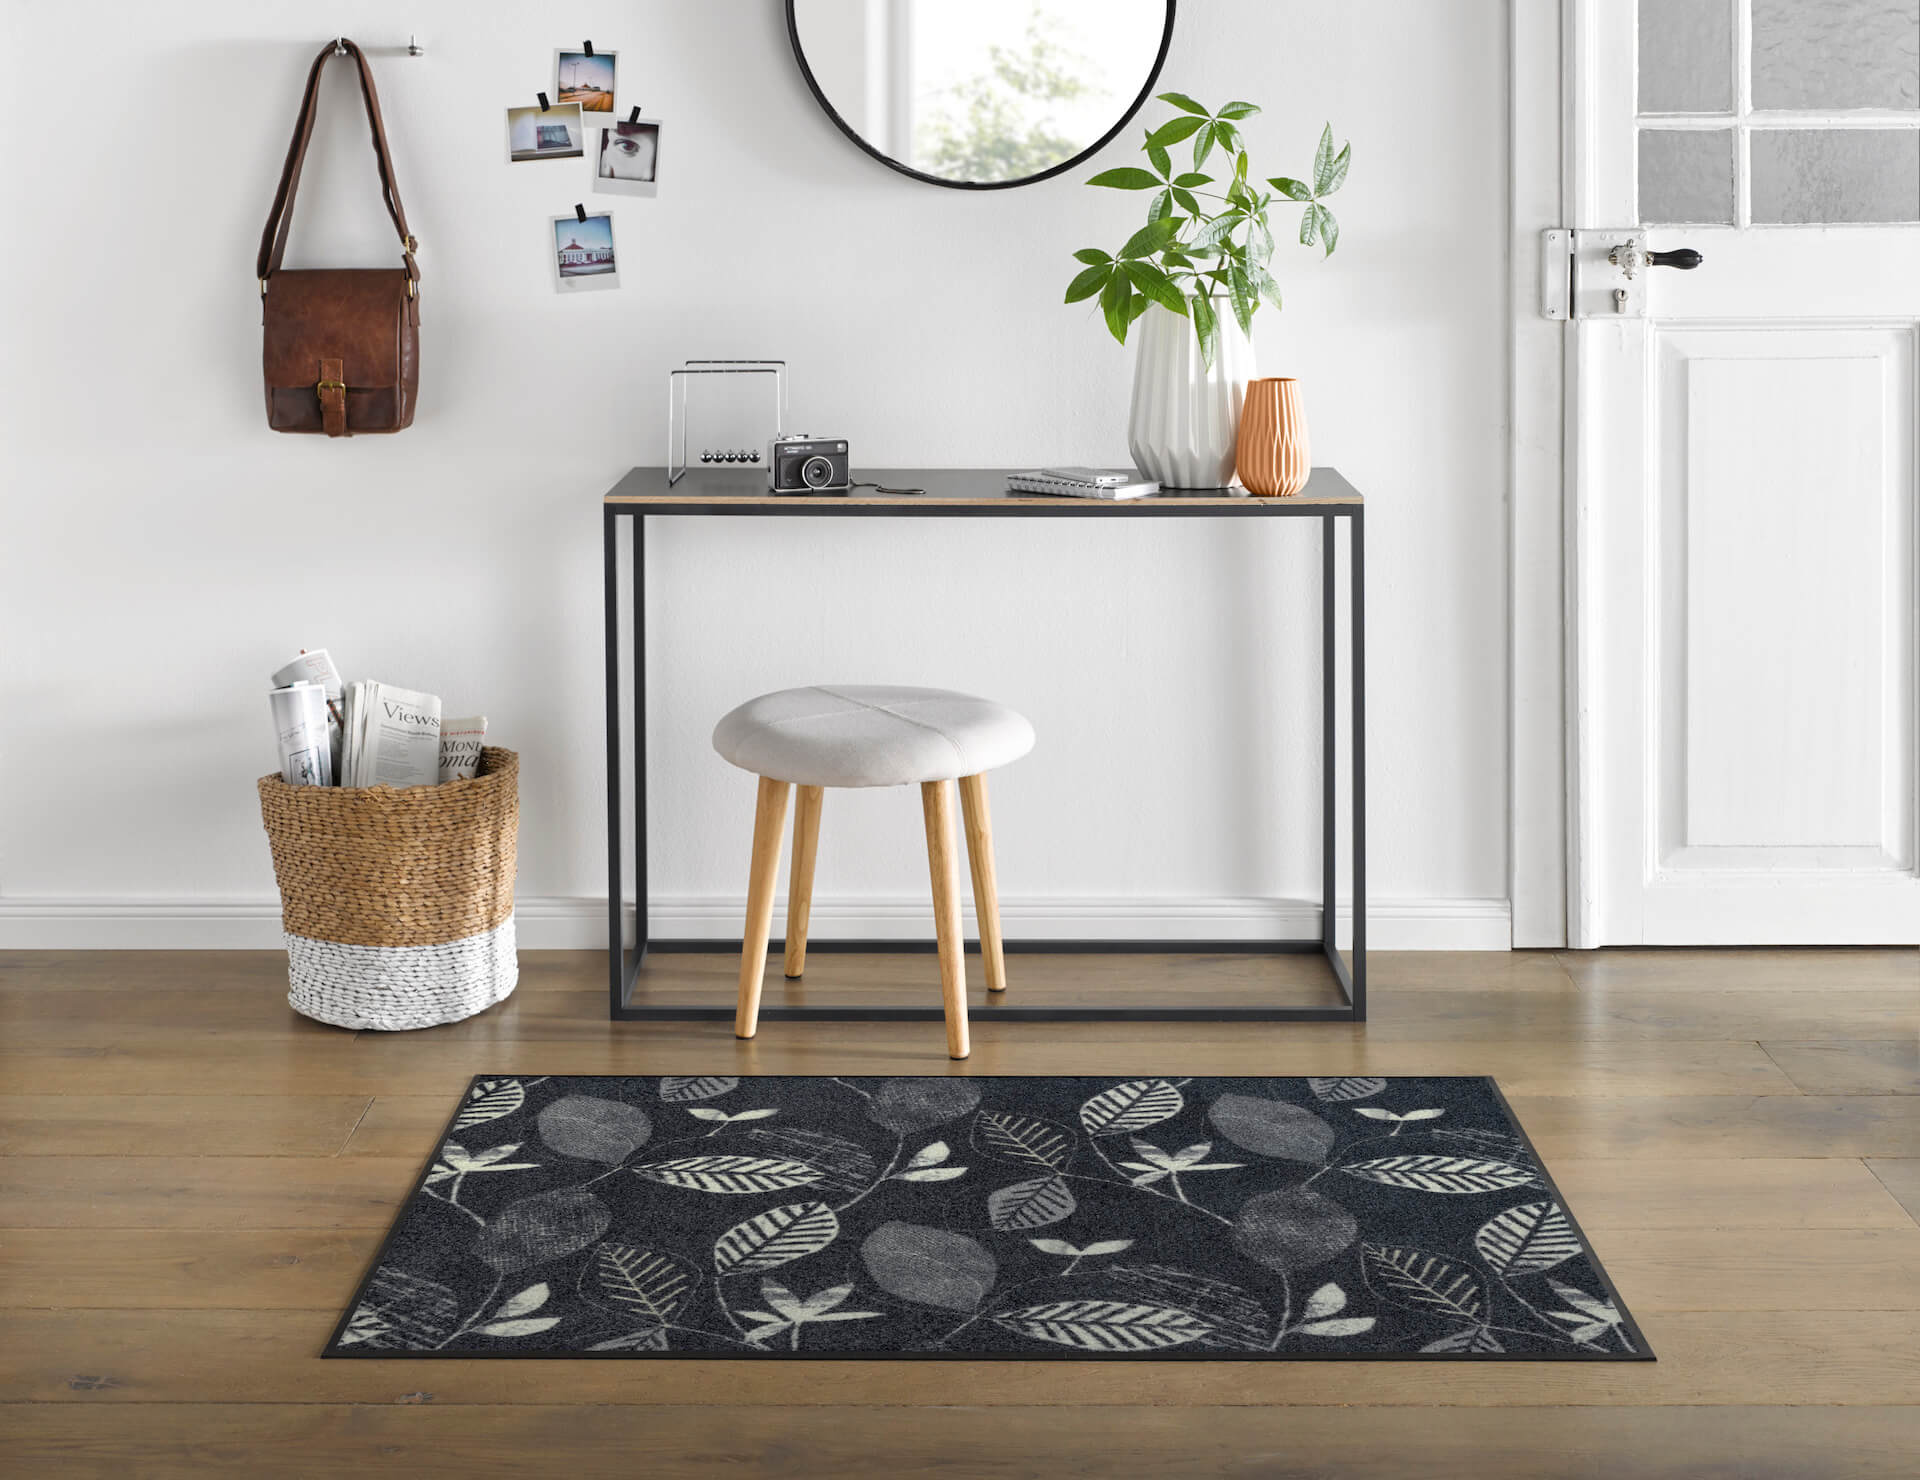 Fußmatte Conflore, Wash & Dry Interior Design, grau/weiß, floral, 75 x 120 cm, Interieurbild